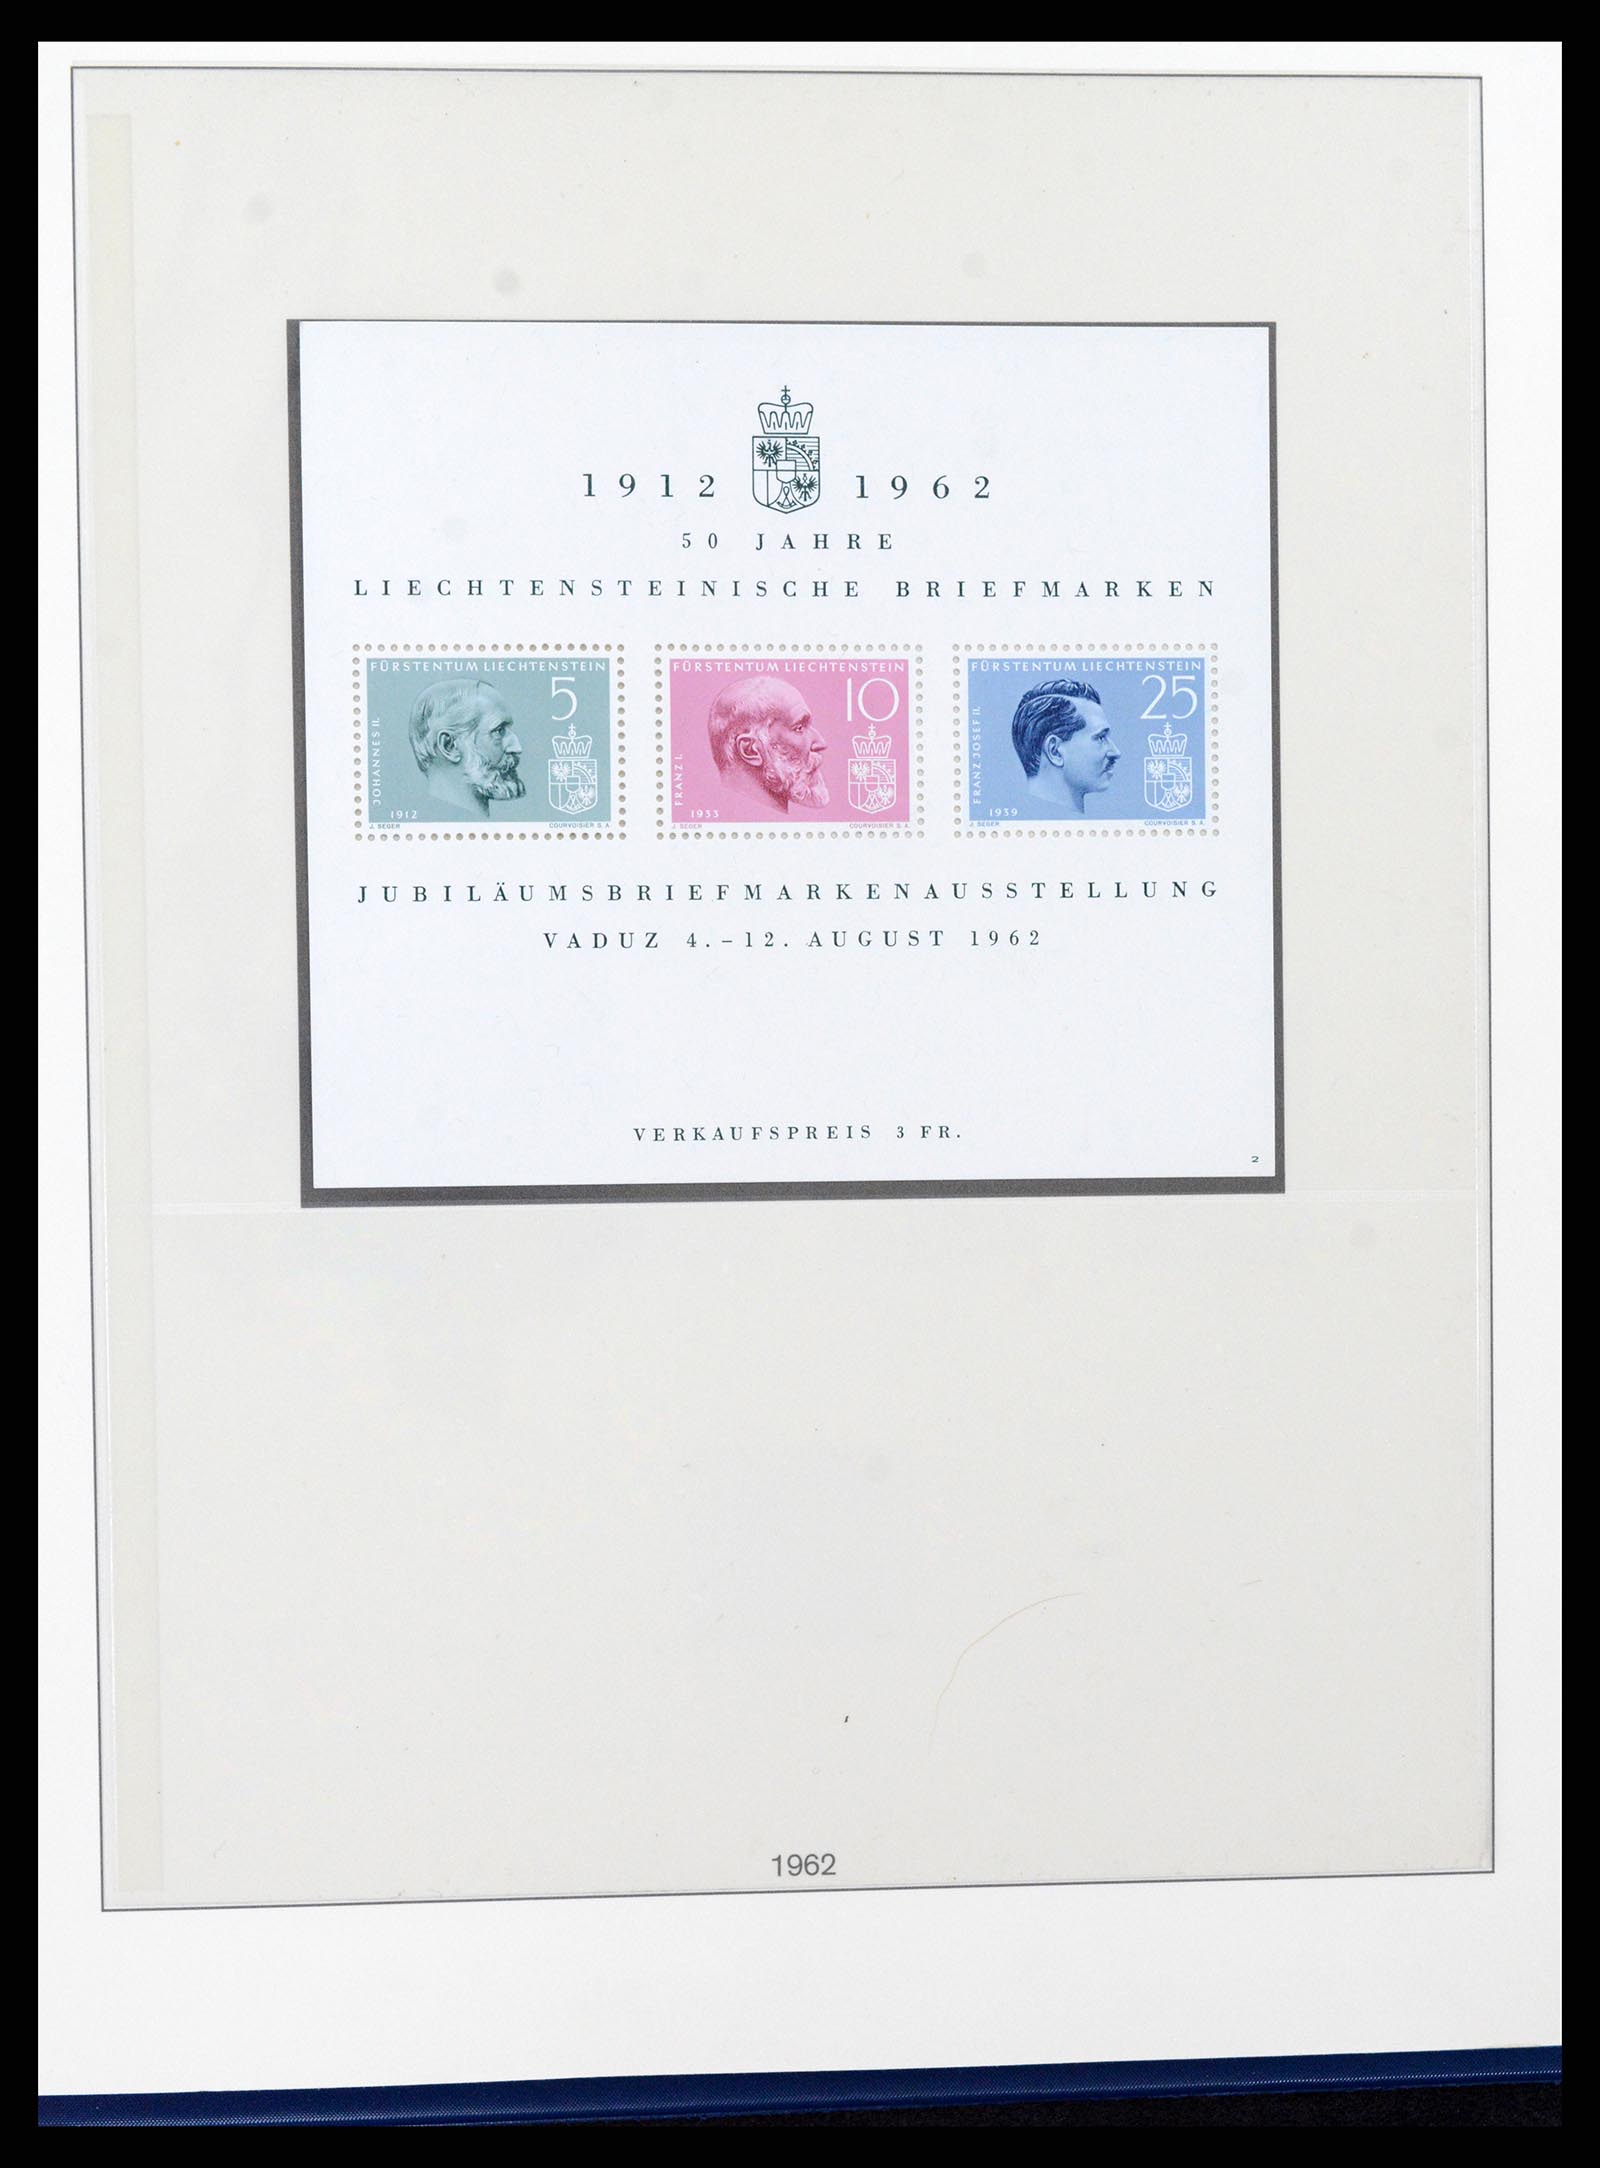 37295 038 - Stamp collection 37295 Liechtenstein 1912-2009.